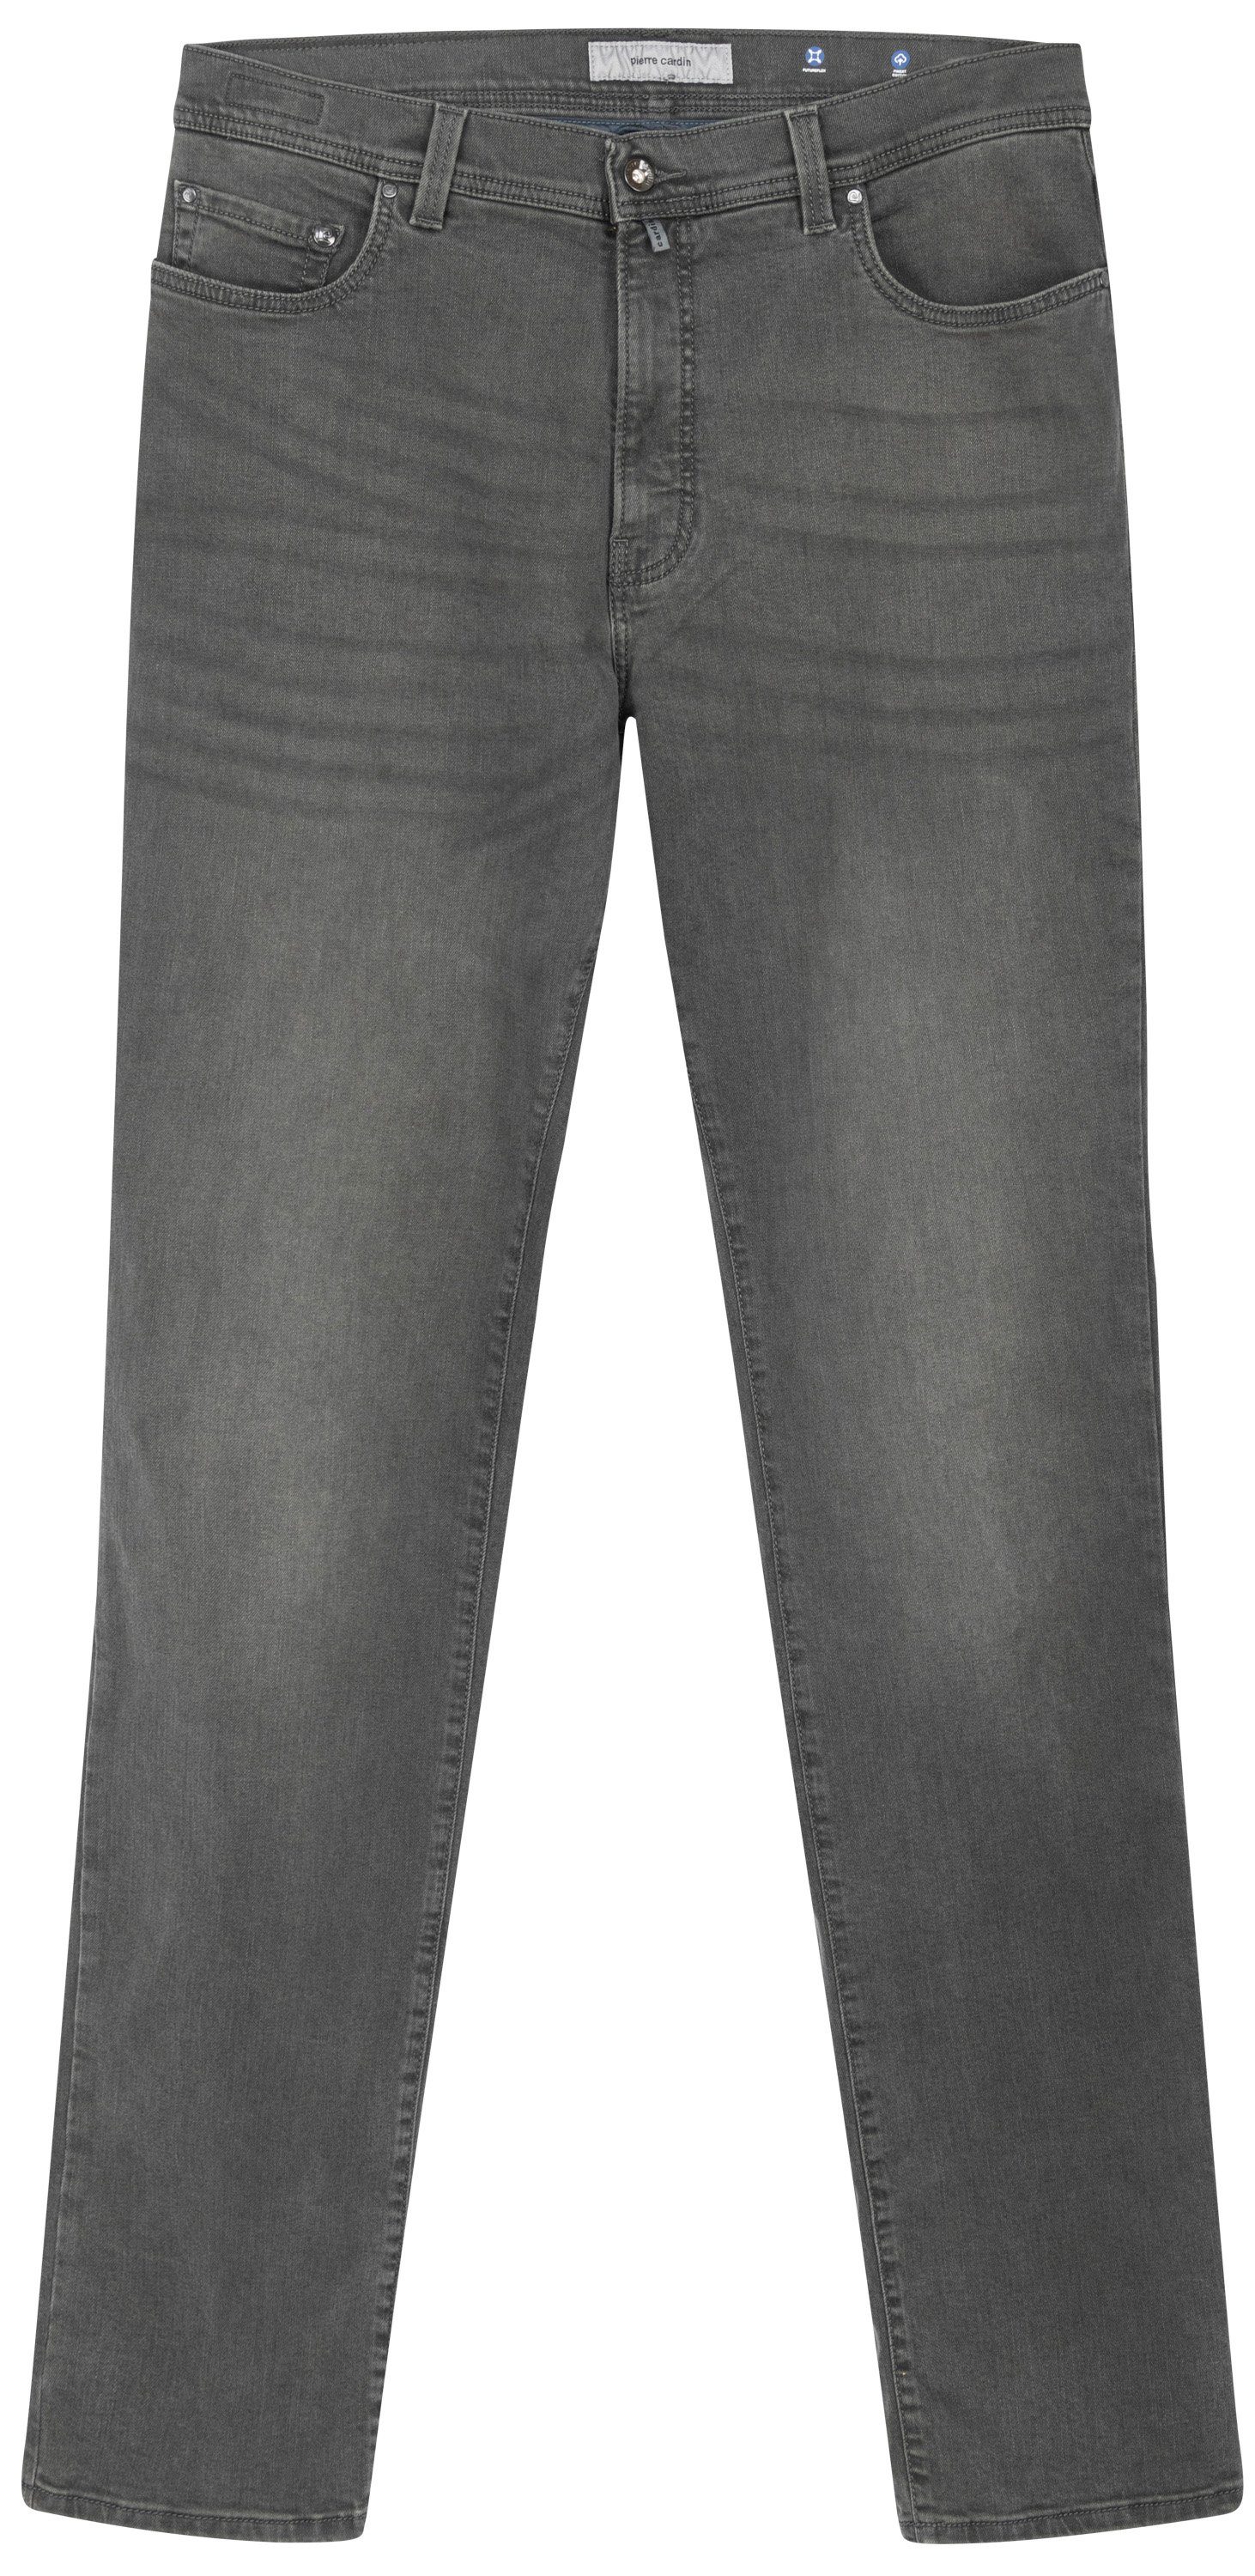 Pierre Cardin 5-Pocket-Jeans PIERRE CARDIN LYON TAPERED dark grey used buffies 38510 8103.5804 -